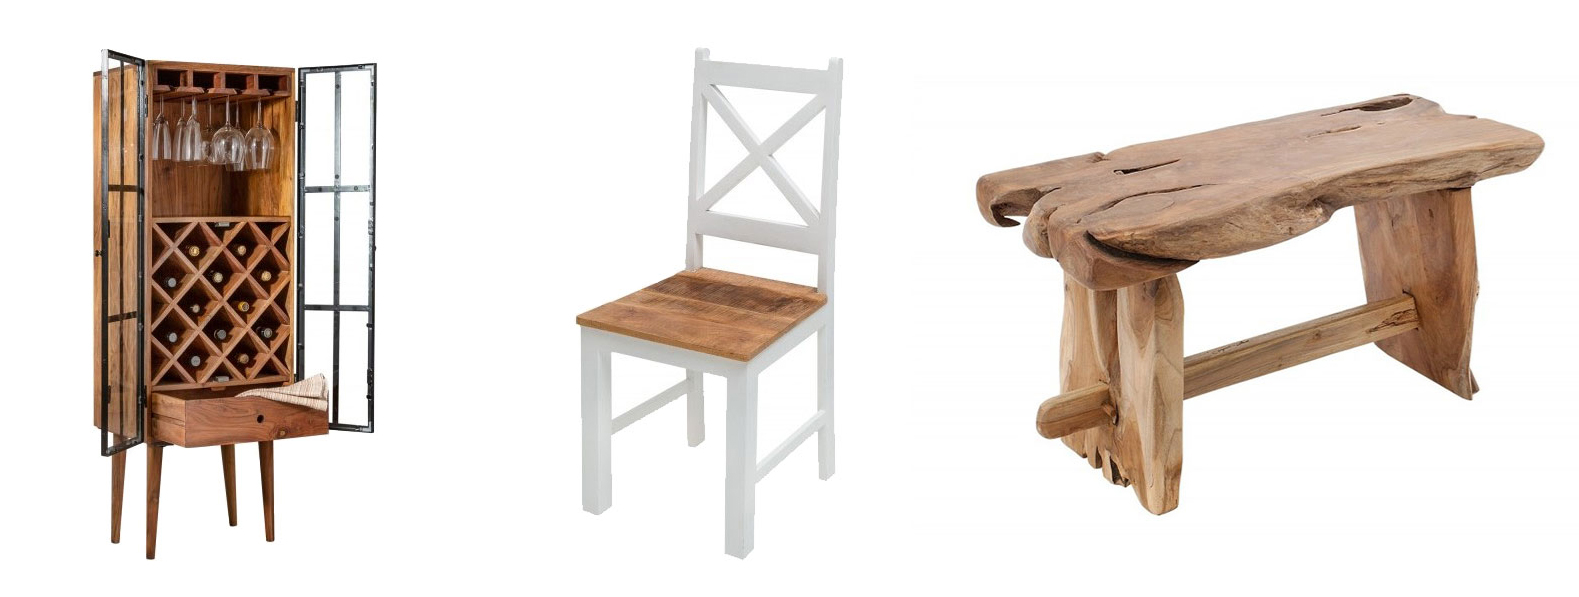 Venkovská stylová vinotéka Bodega z masivního dřeva, Vkusná masivní židle Frida Blanca, Příruční stolek Basildon z masívního teakového dřeva